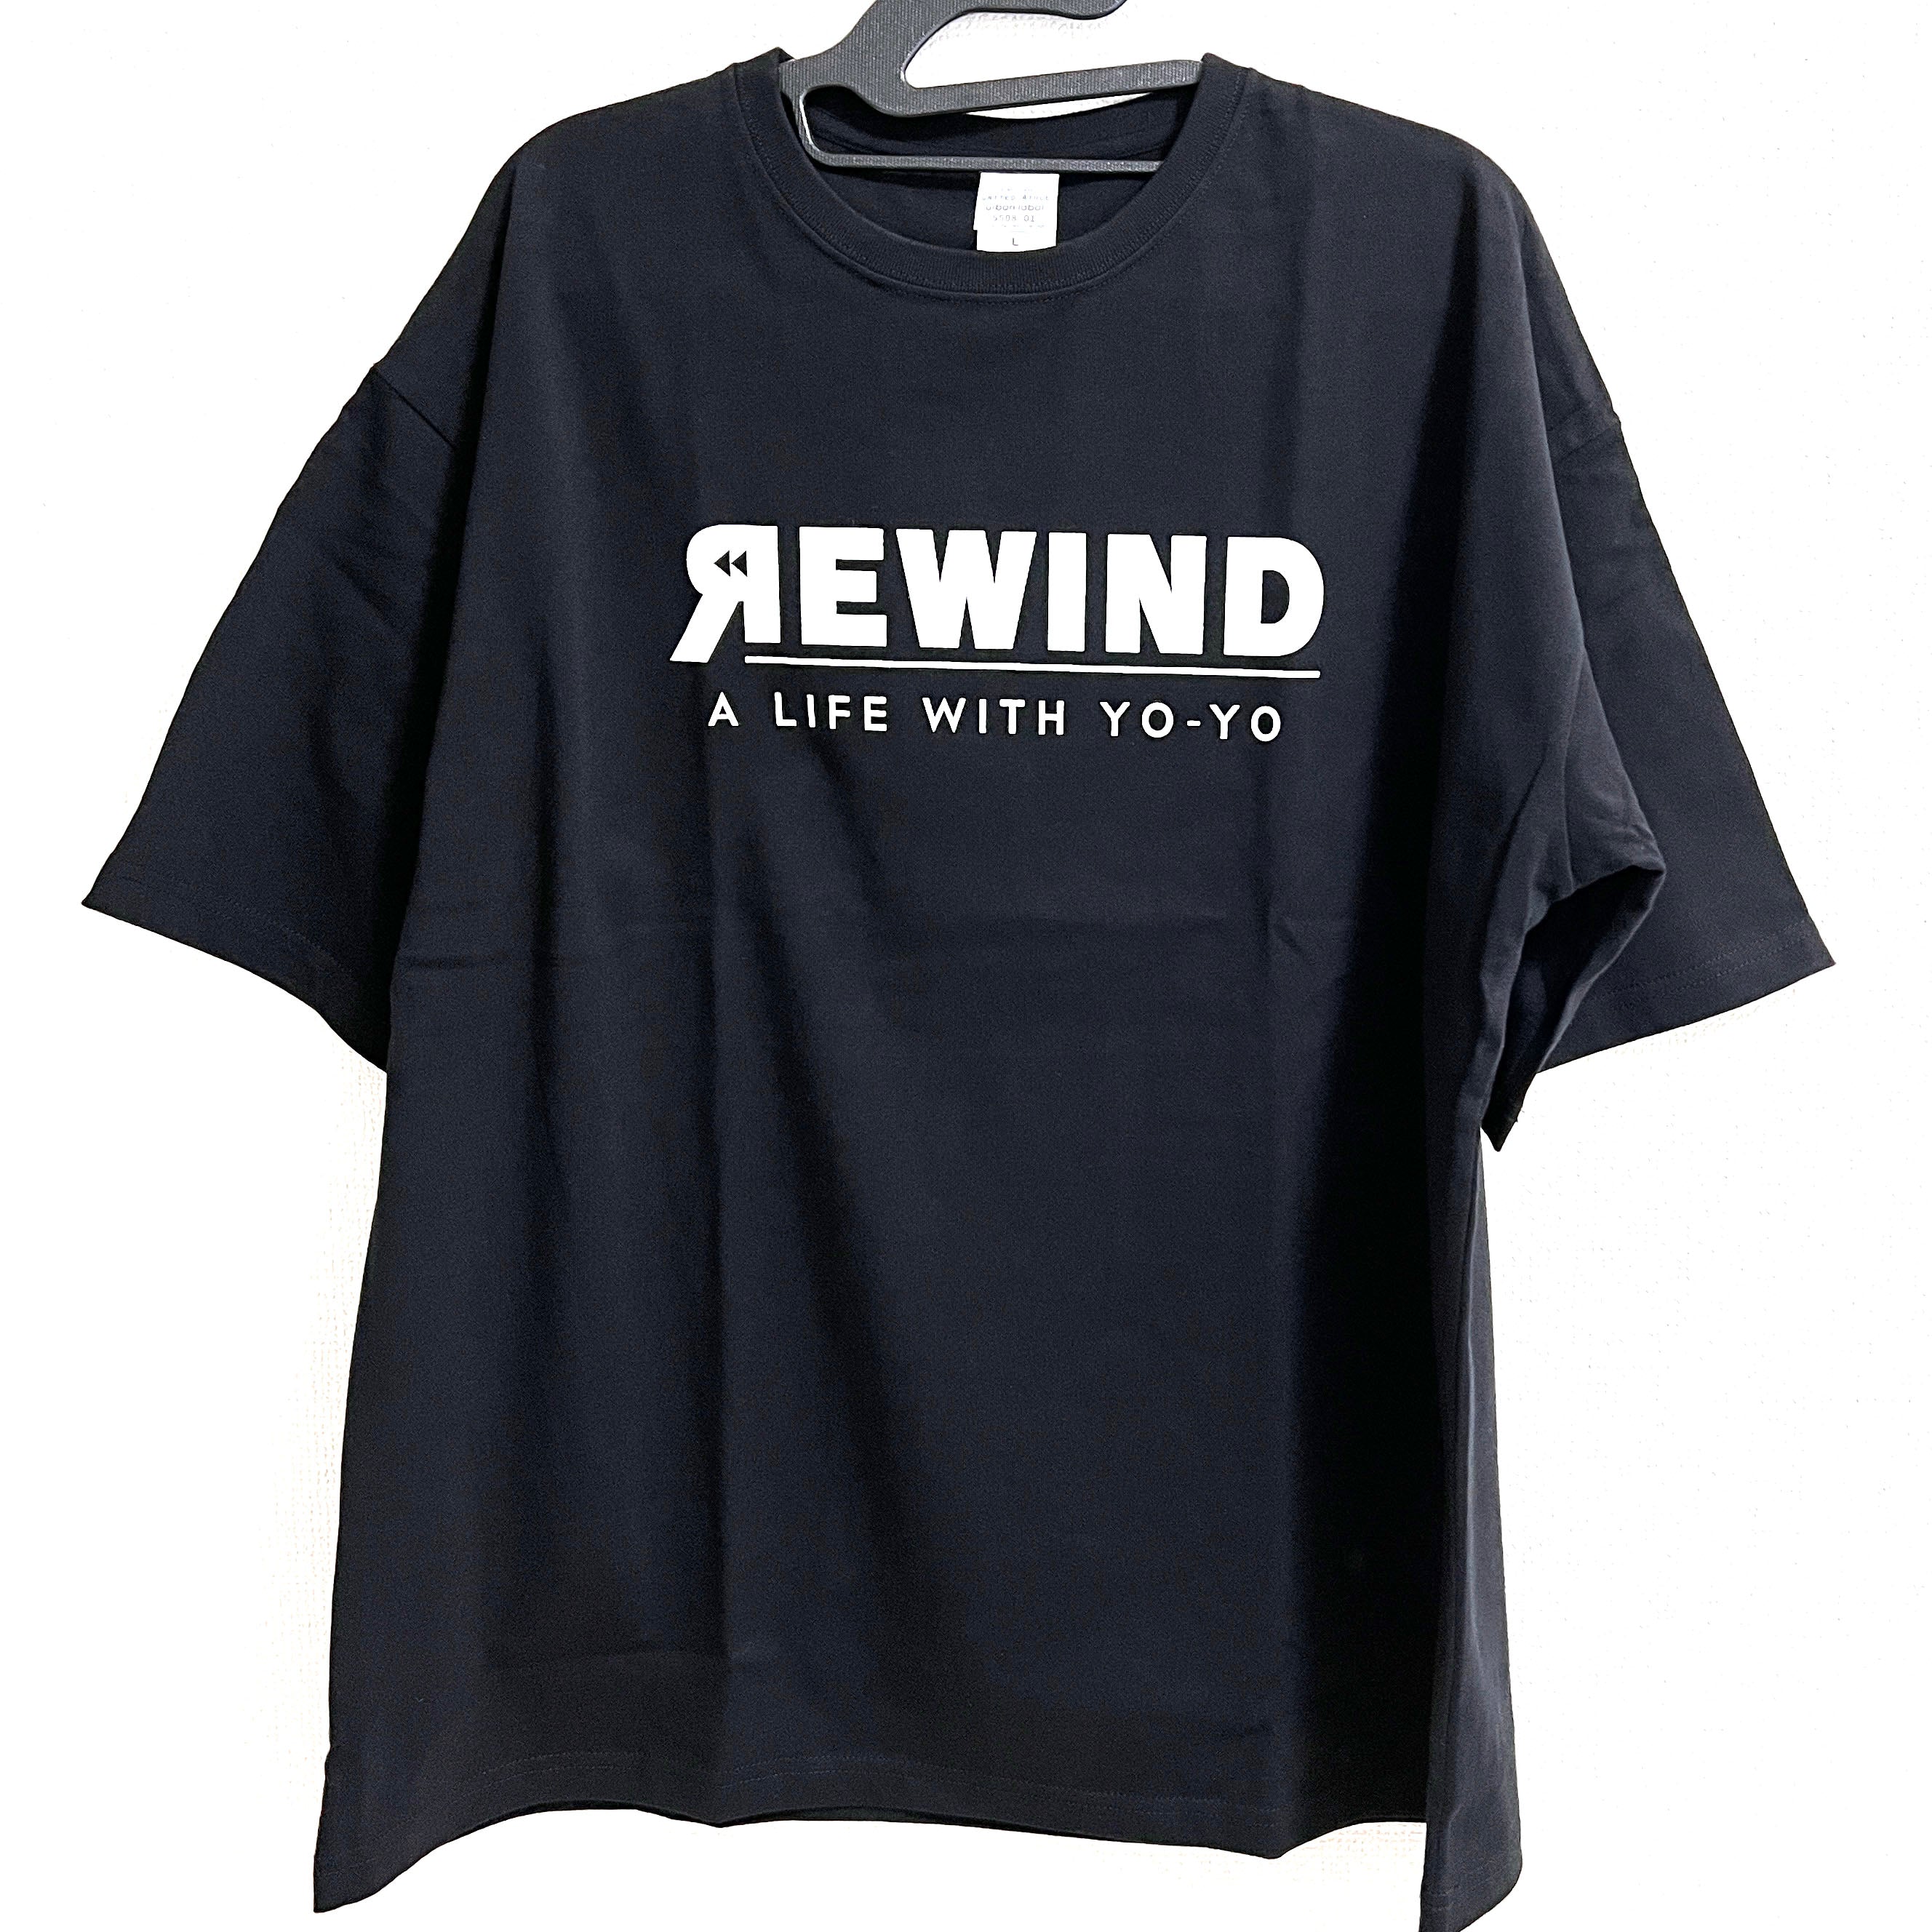 REWIND ビッグシルエット Tシャツ (ブラック / ホワイトロゴ)